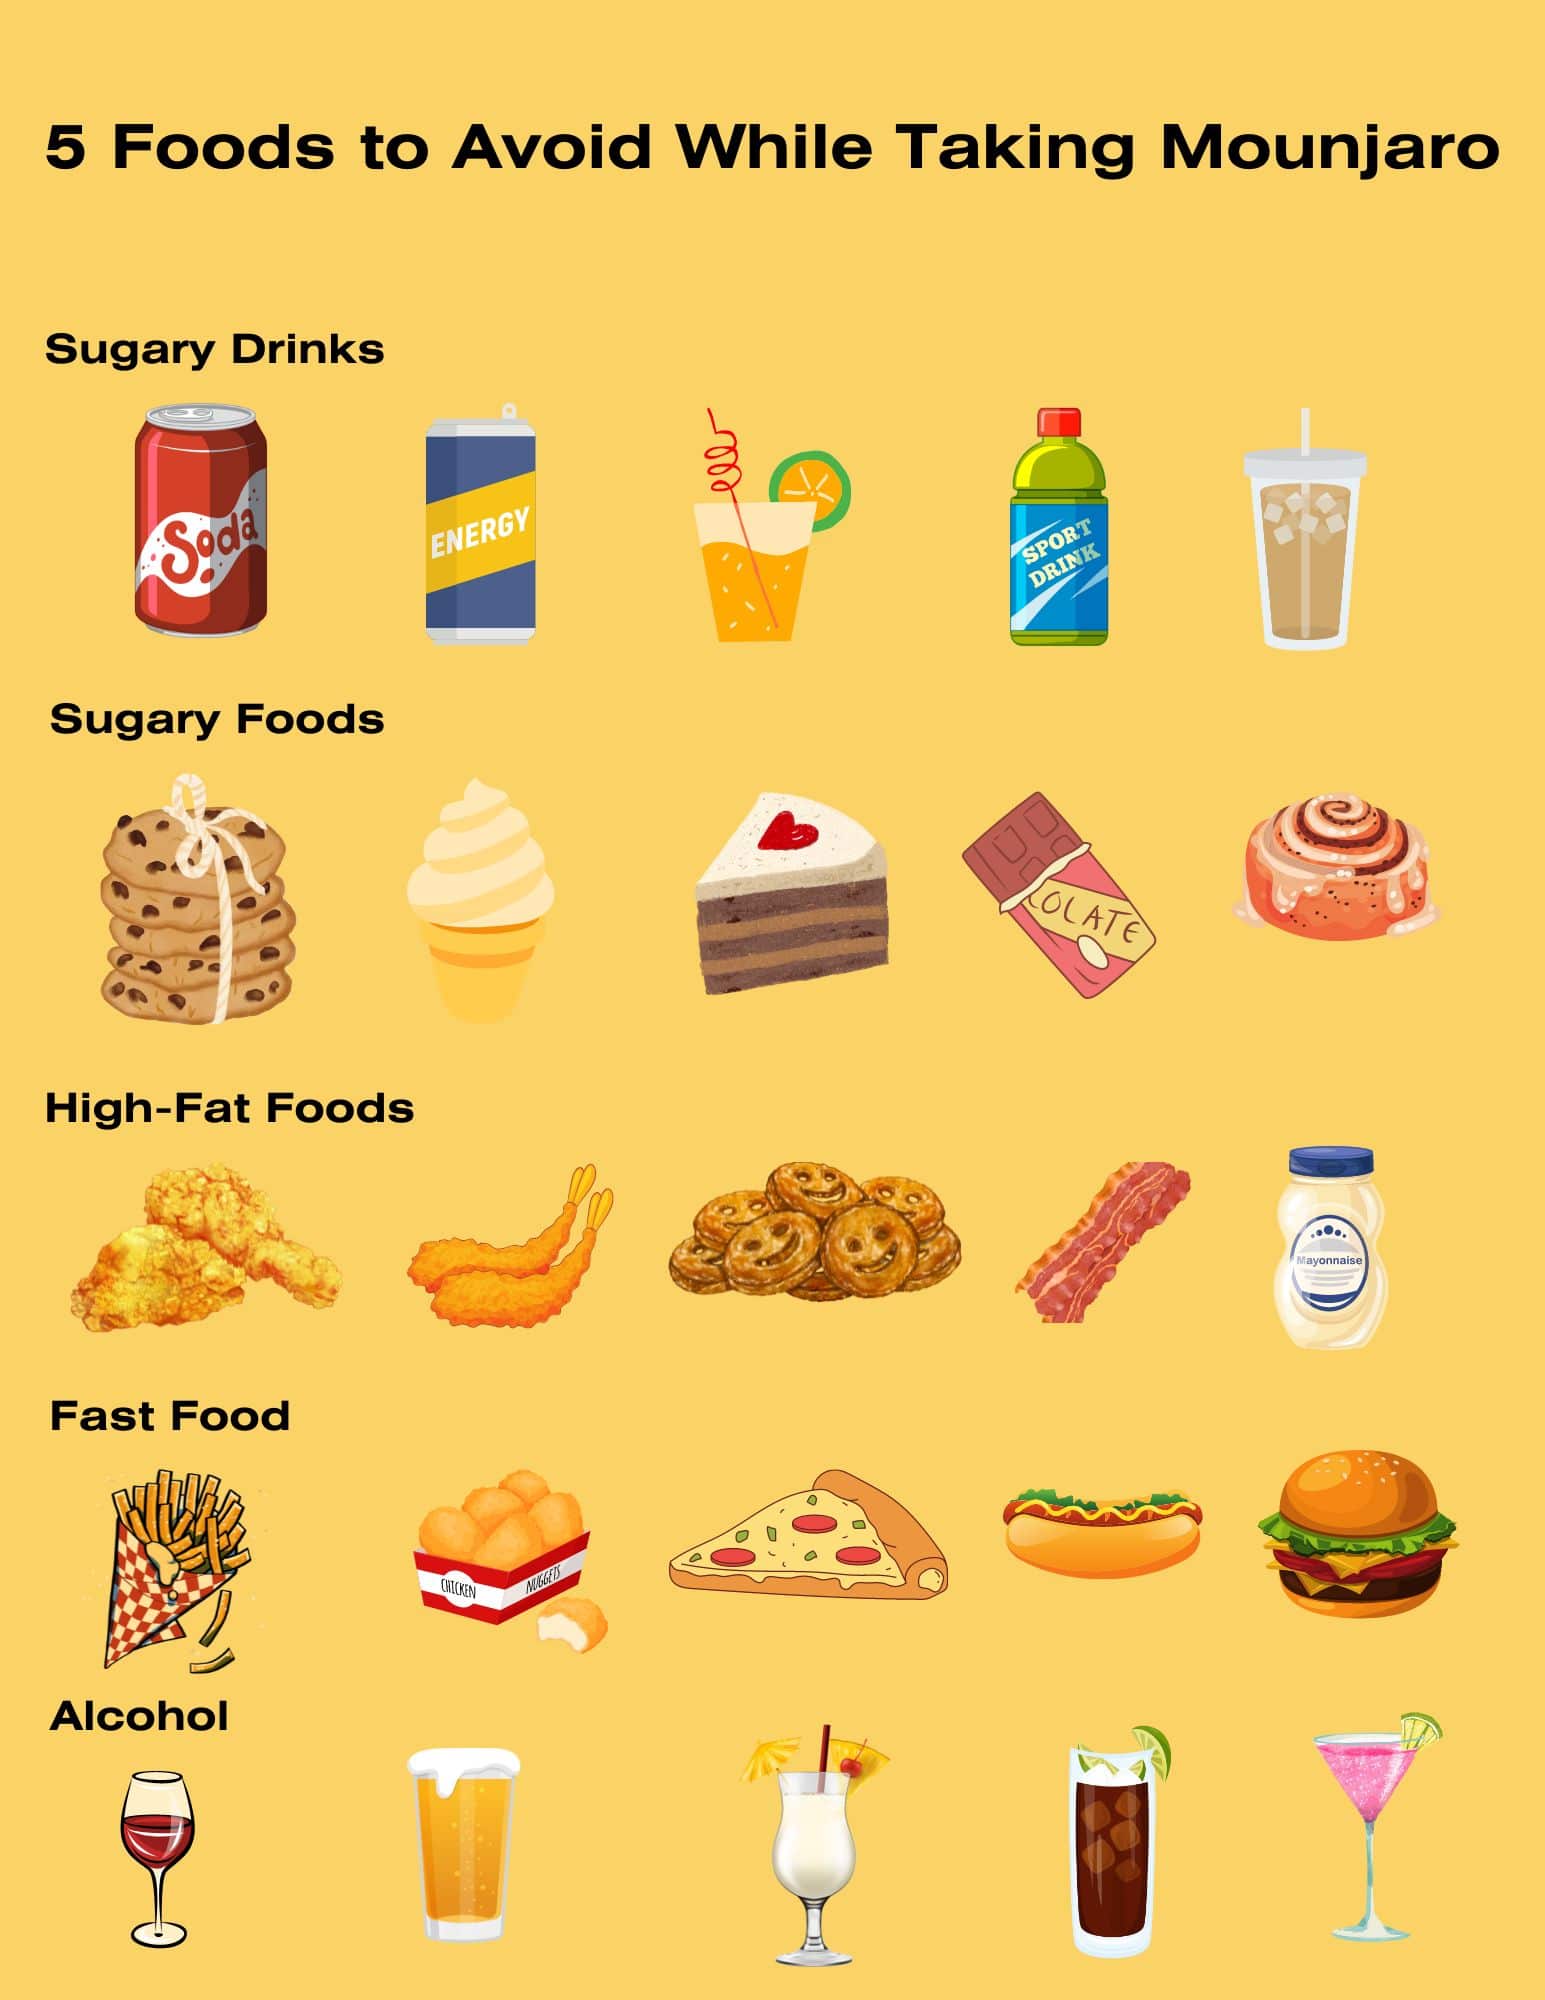 Mounjaro foods to avoid